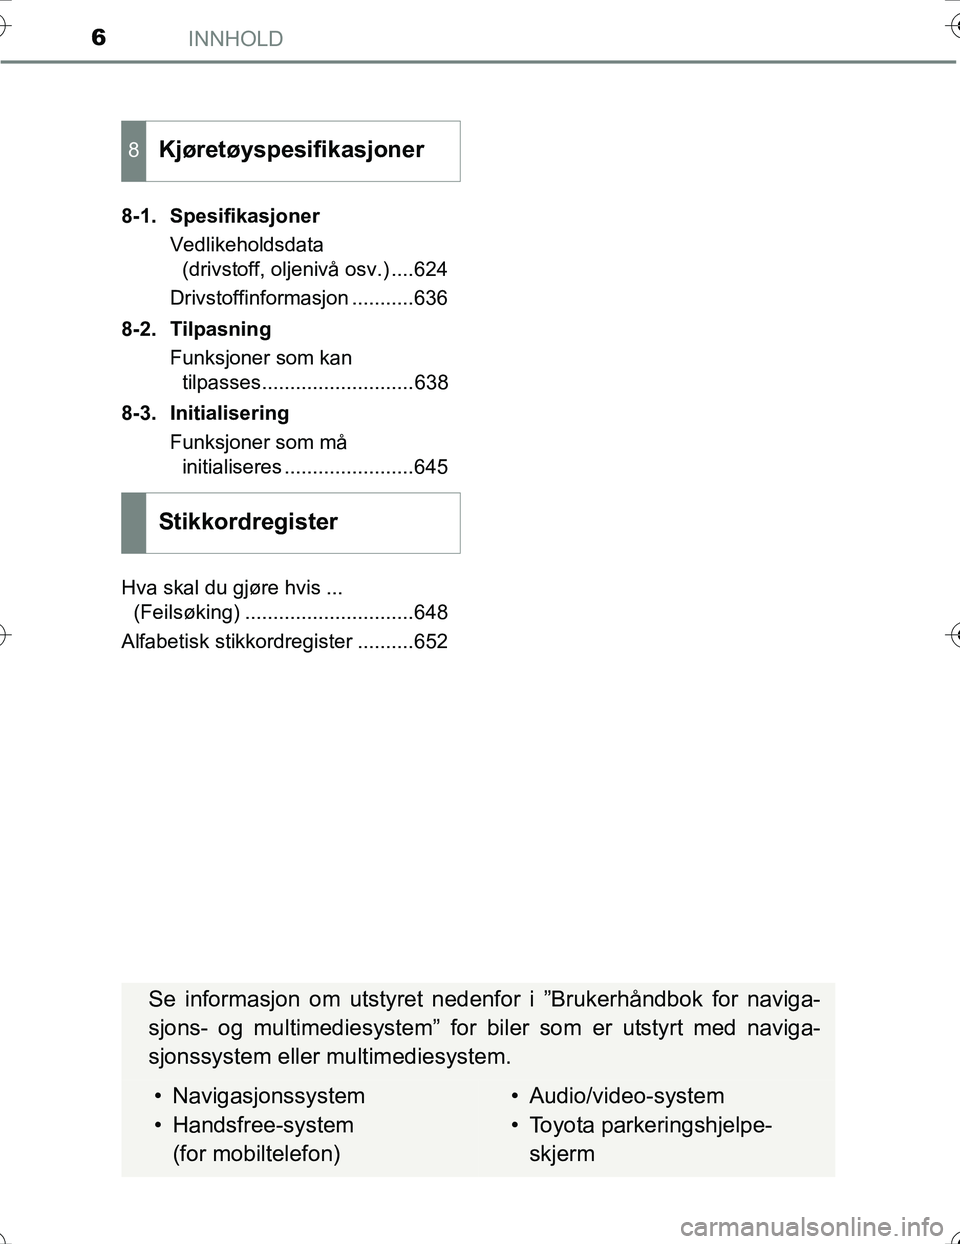 TOYOTA PRIUS 2016  Instruksjoner for bruk (in Norwegian) INNHOLD6
OM47A31NO8-1. Spesifikasjoner
Vedlikeholdsdata(drivstoff, oljenivå osv.) ....624
Drivstoffinformasjon ...........636
8-2. Tilpasning Funksjoner som kantilpasses...........................638